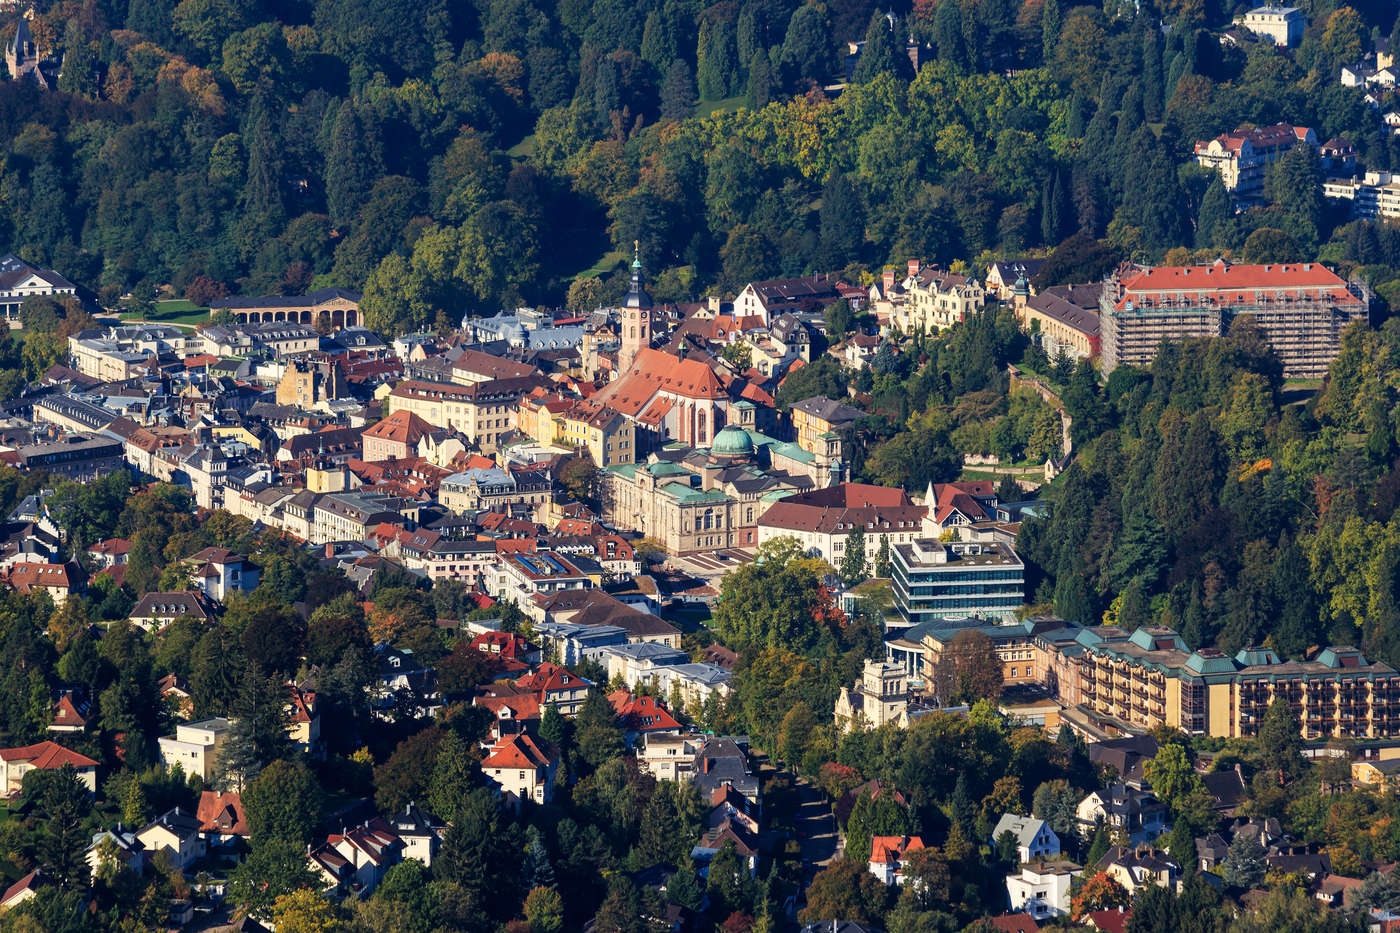 Objavte svoj kúsok Baden-Badenu.